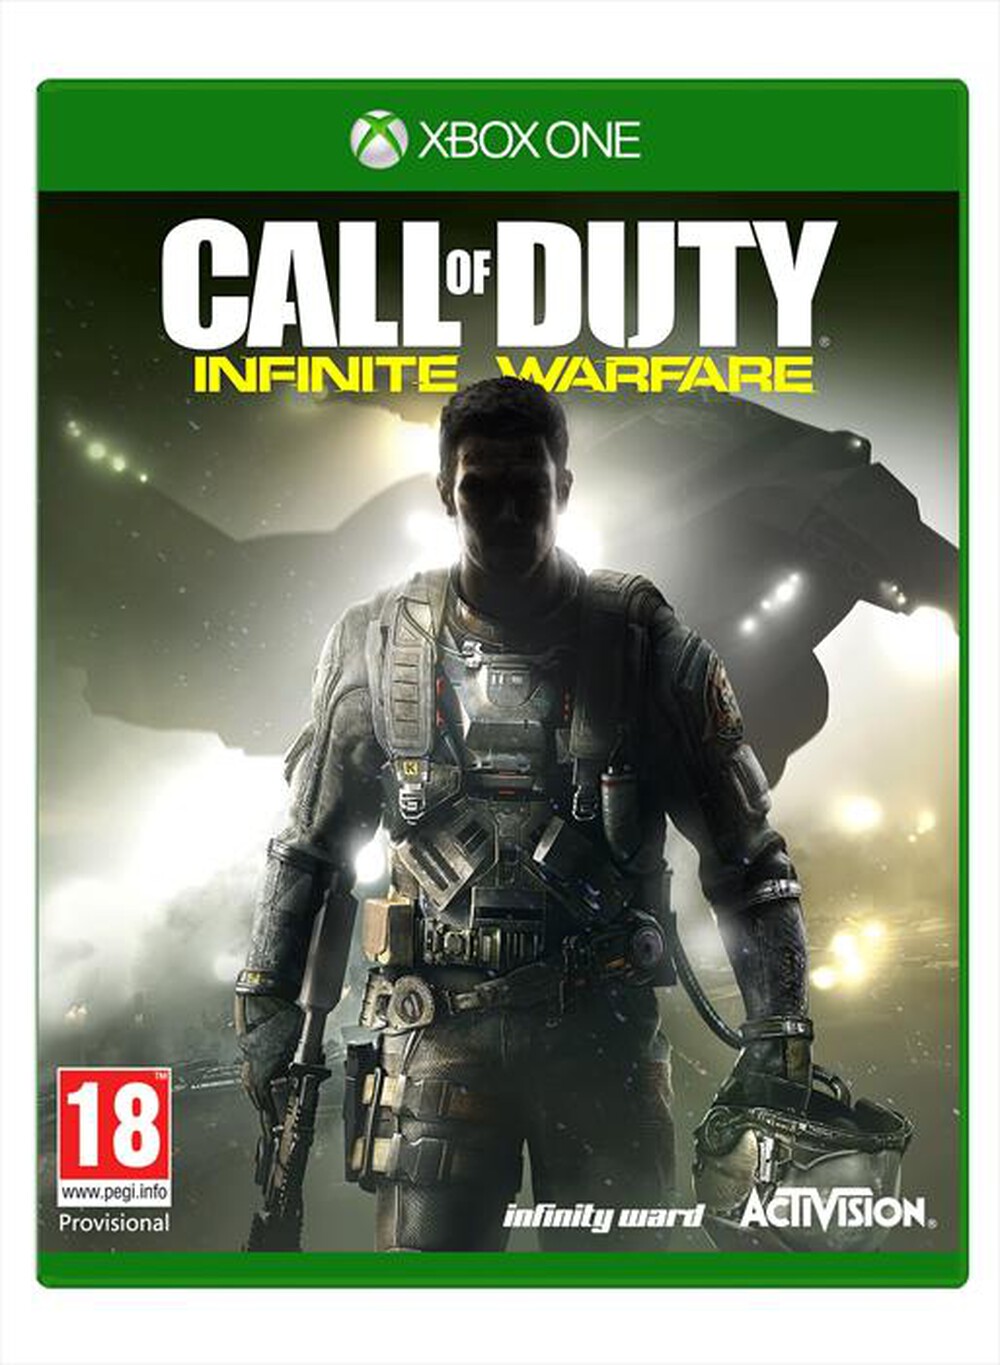 "ACTIVISION-BLIZZARD - Call of Duty: Infinite Warfare Xbox One - "